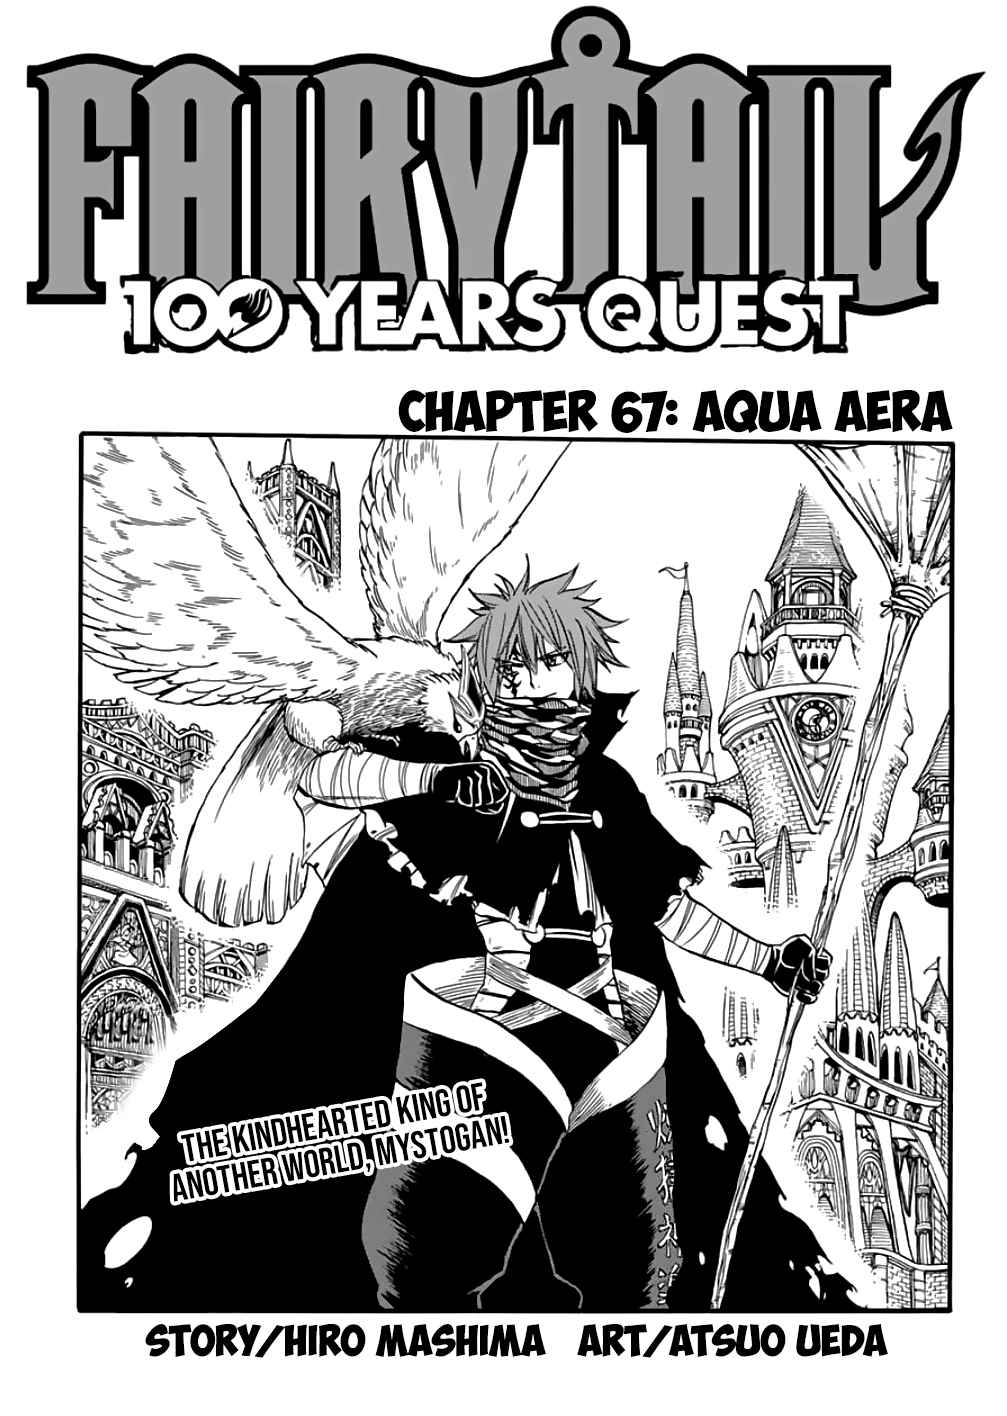 Fairy Tail: 100 Years Quest Ch. 67 Aqua Aera